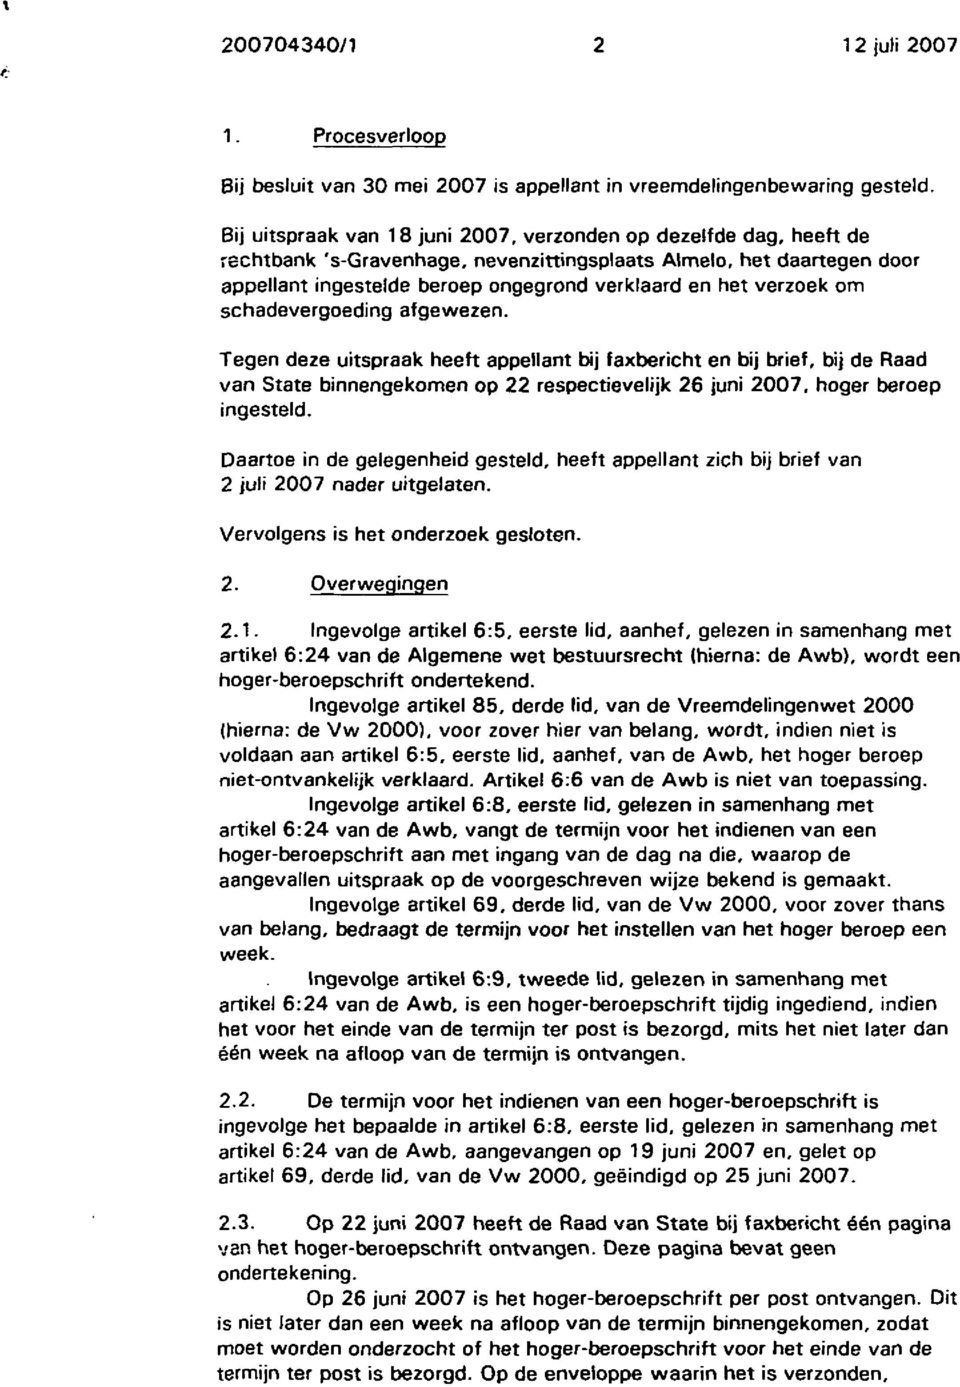 verzoek om schadevergoeding afgewezen. Tegen deze uitspraak heeft appellant bij faxbericht en bij brief, bij de Raad van State binnengekomen op 22 respectievelijk 26 juni 2007, hoger beroep ingesteld.